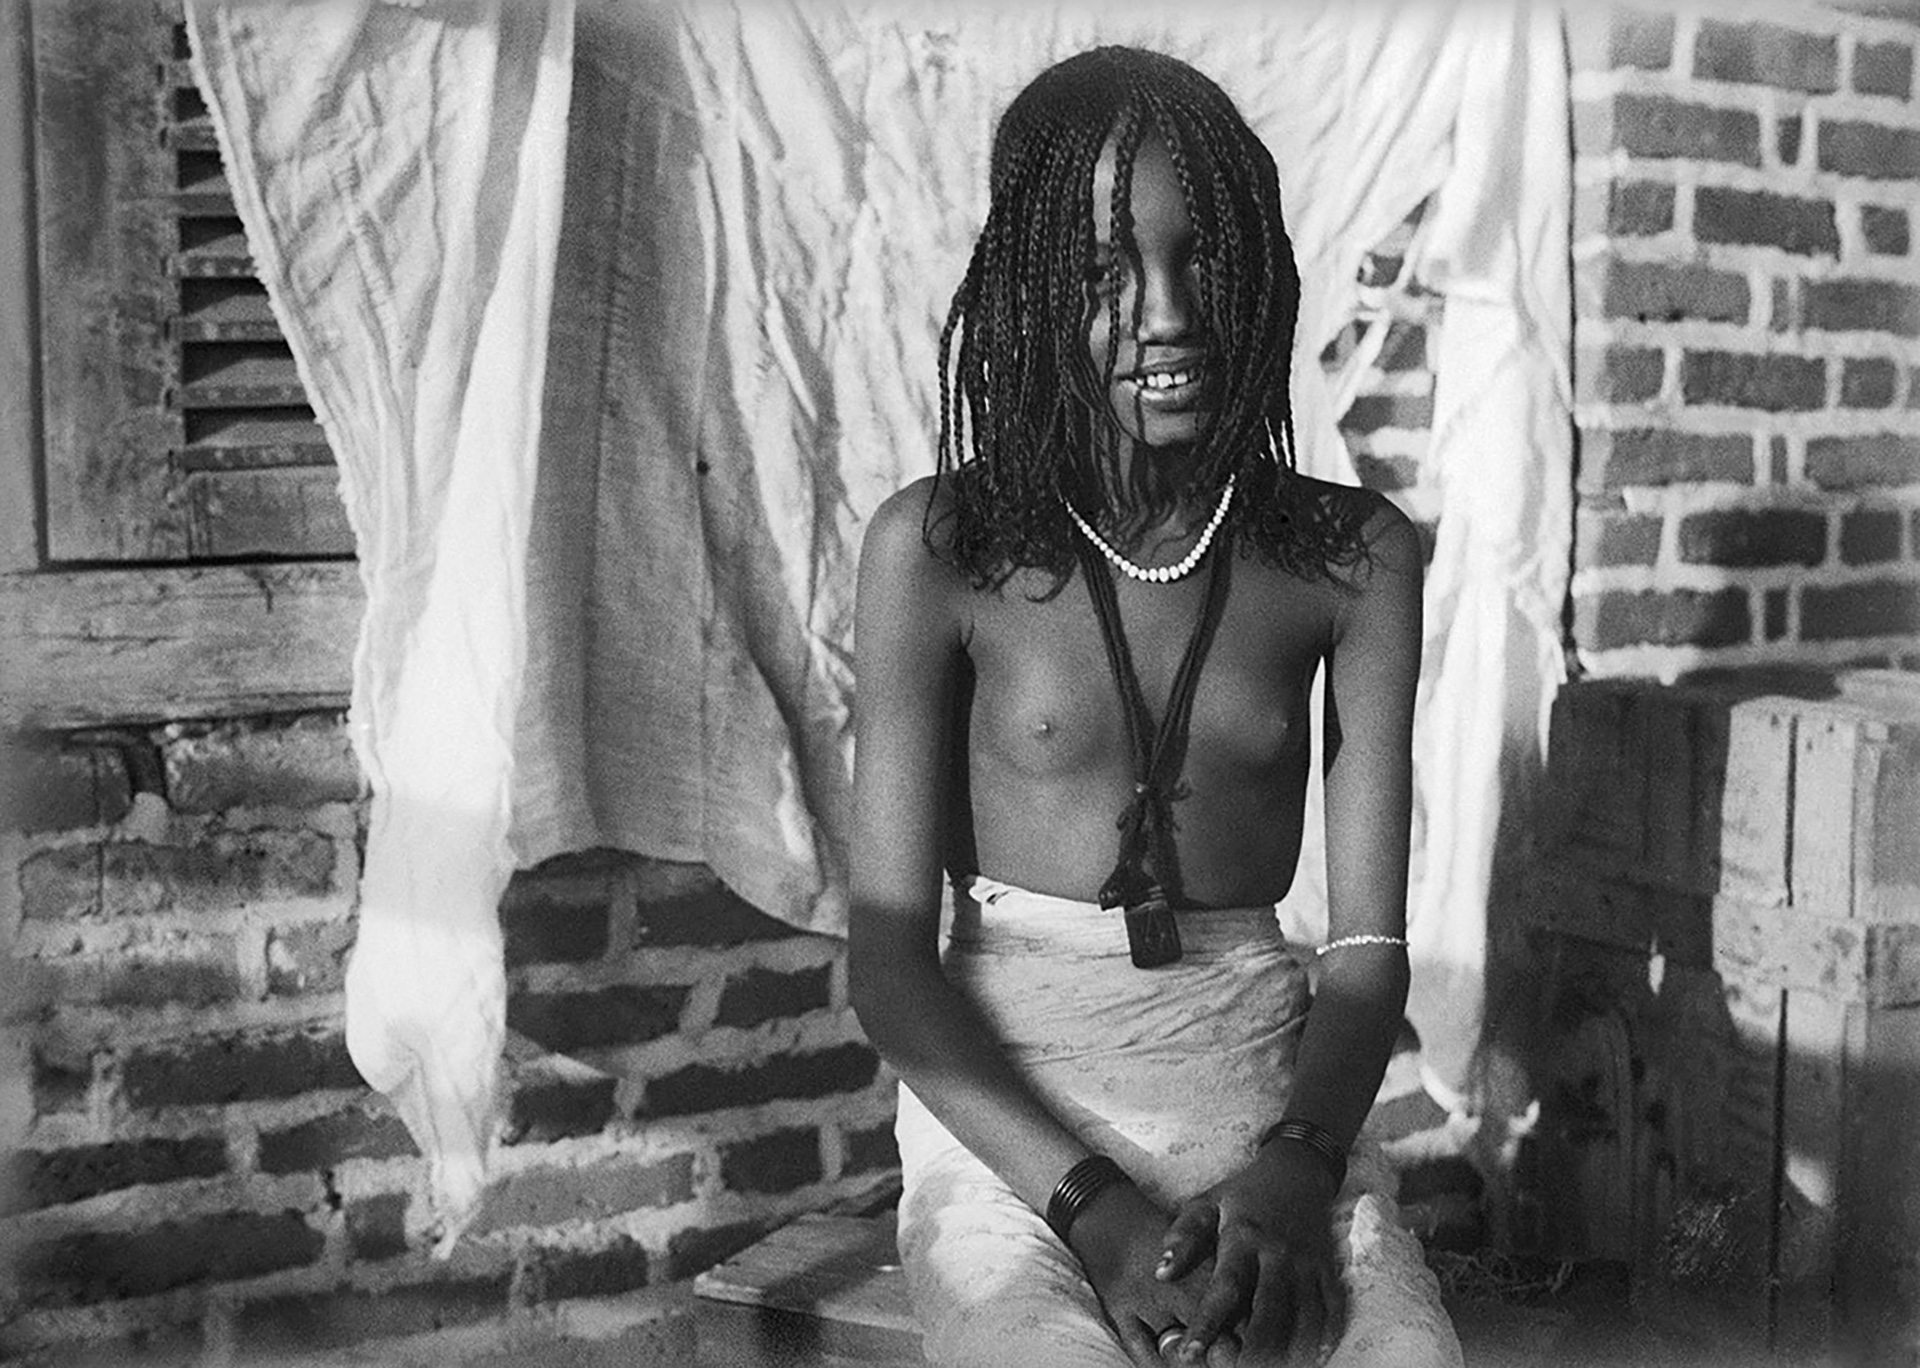 MARC ALLÉGRET AU CONGO (1925-1926)